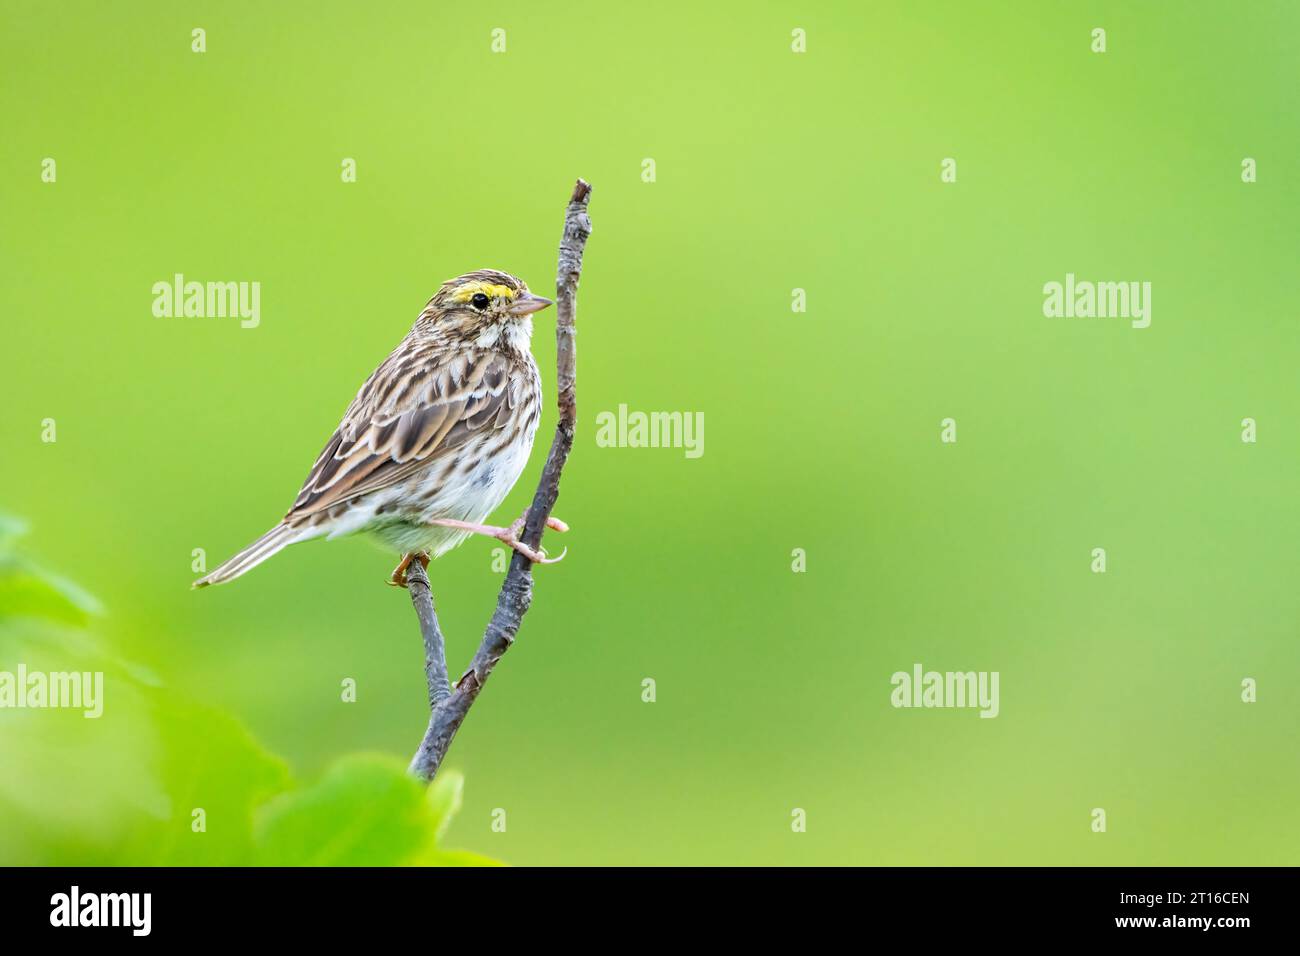 Savannah Sparrow perché sur un arbre dans le sud de l'Alaska. Banque D'Images